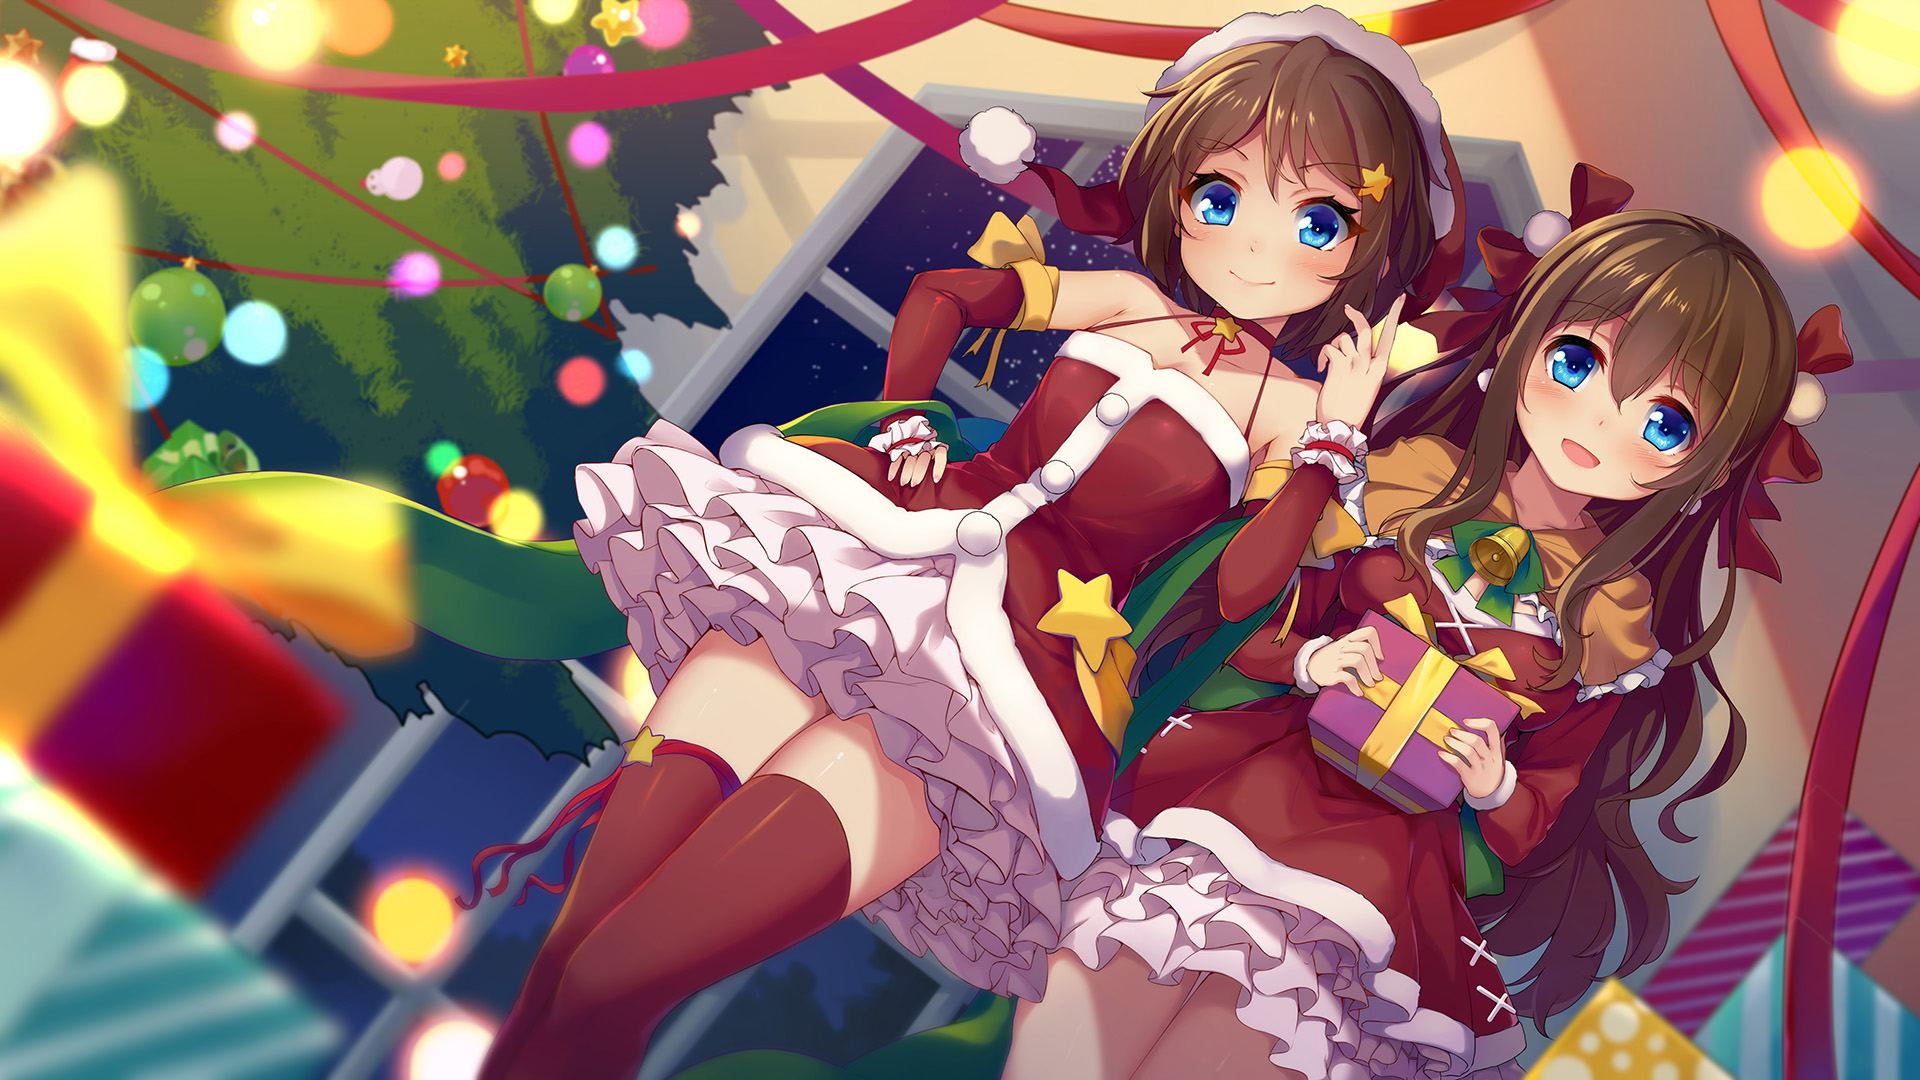 Anime 1920x1080 anime girls Santa costume Christmas tree nerv110 Christmas presents thigh-highs Santa girl brunette blue eyes